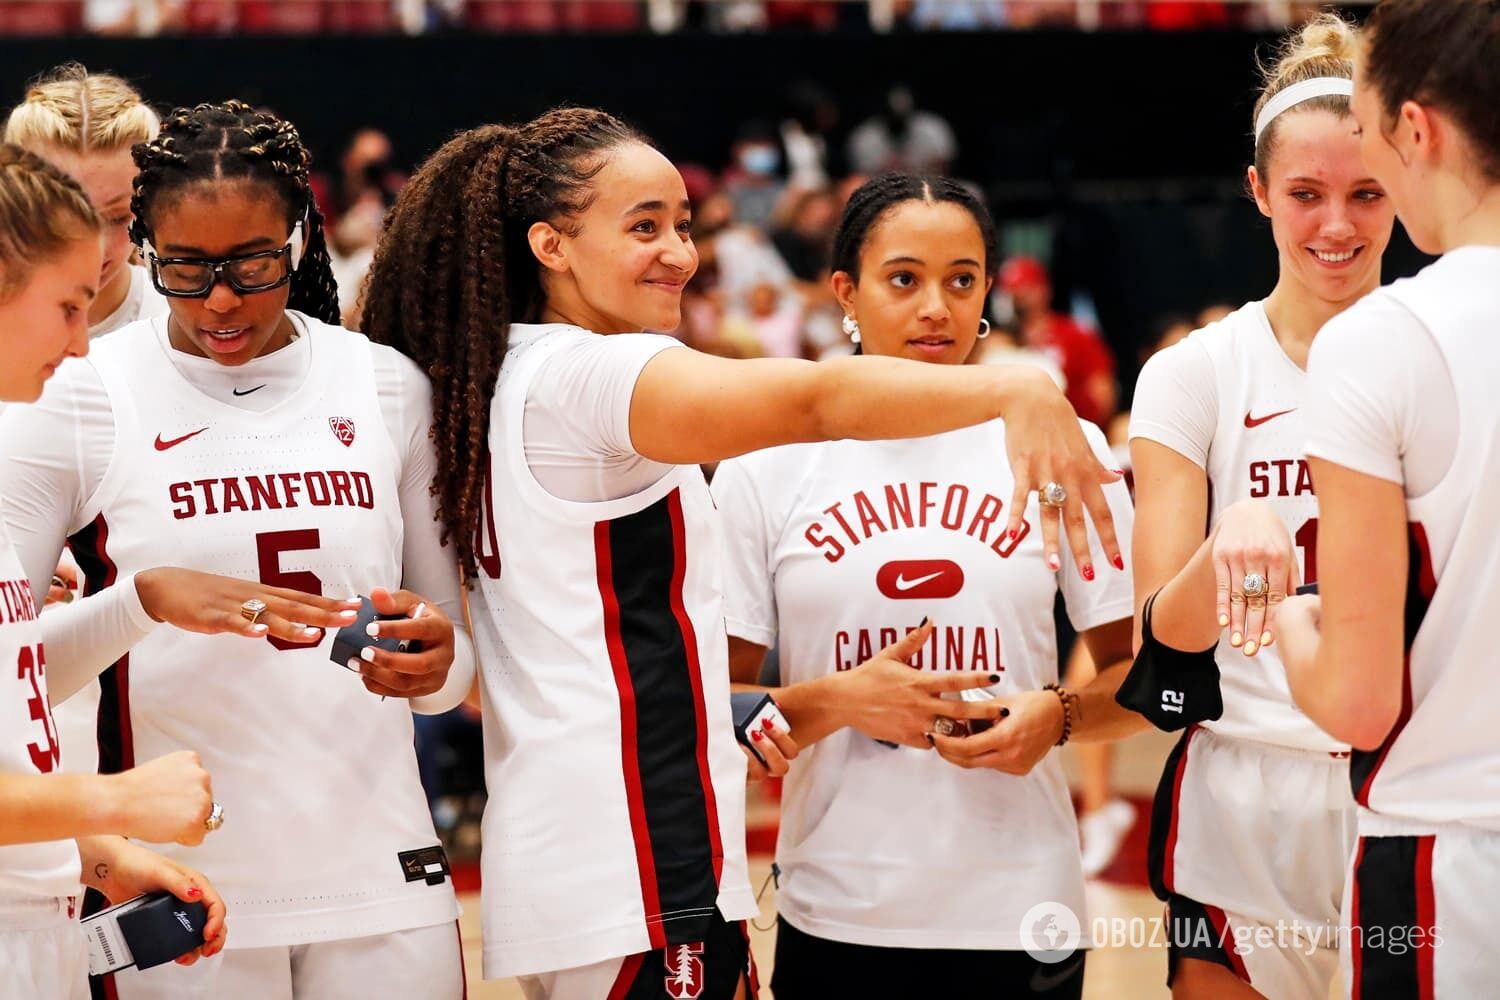 14 ноября на церемонии награждения баскетболисток Стэнфордского университета, включая самого выдающегося игрока Финала четырех Хейли Джонс, были вручены кольца чемпионата страны 2020 года.